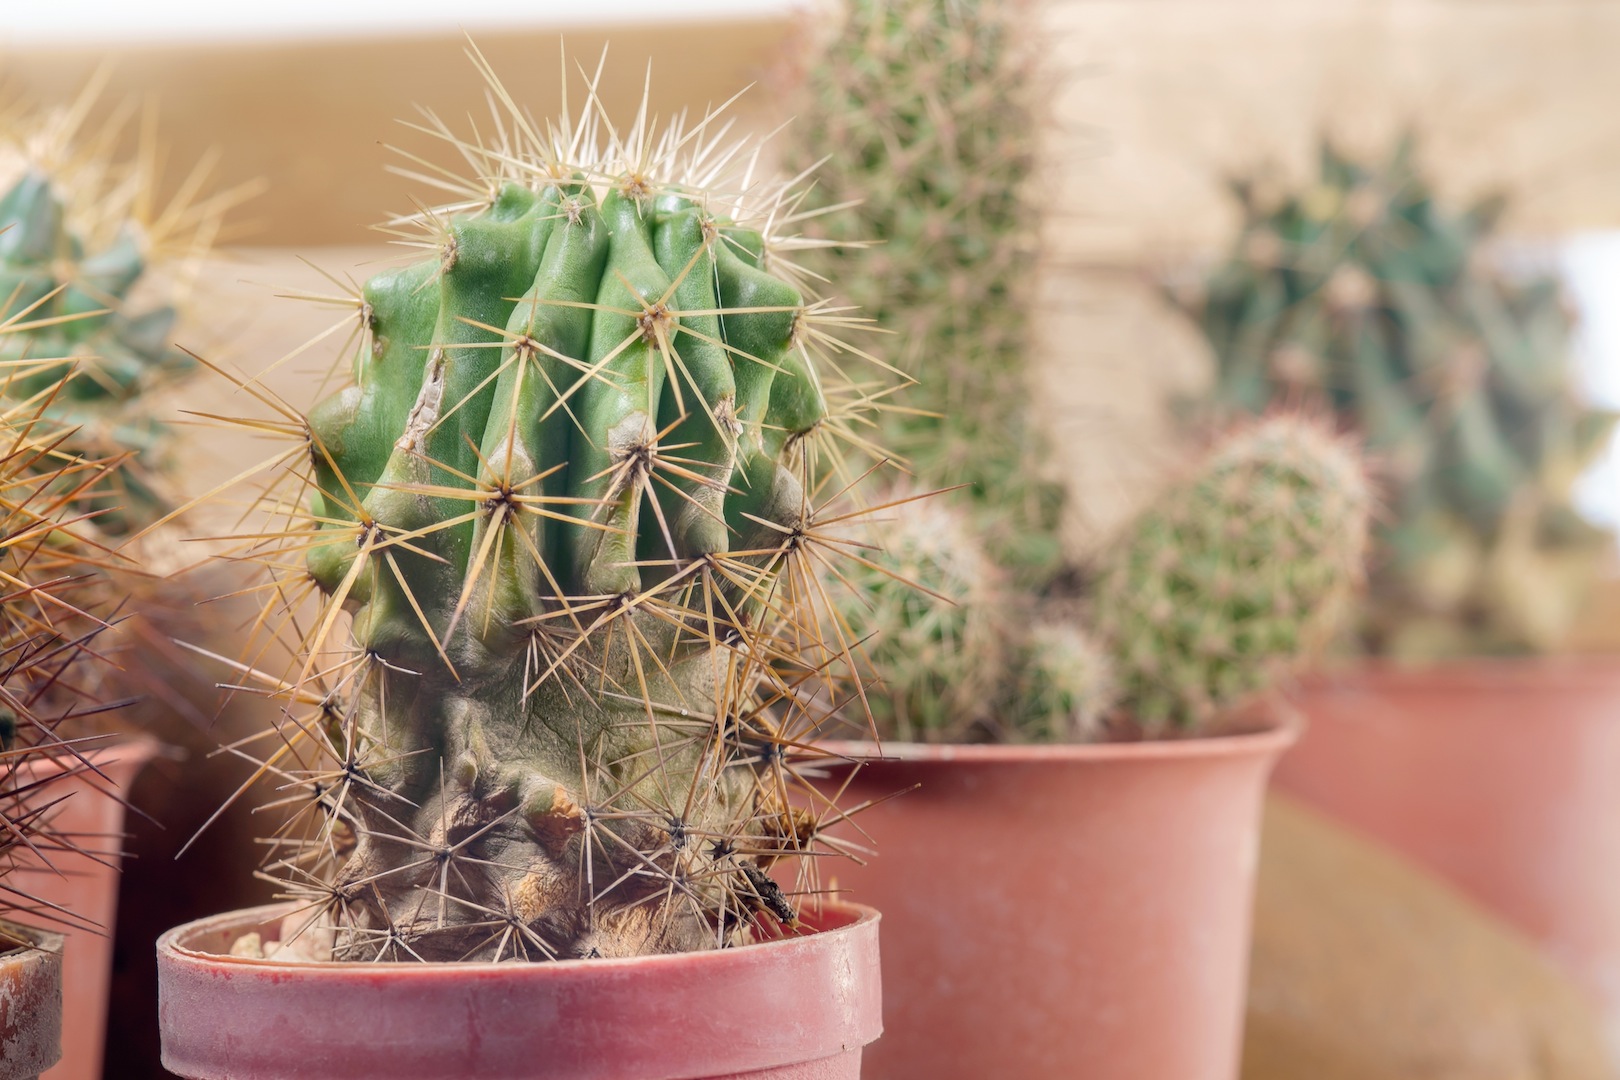 Cactus - cosa sono e da dove vengono?